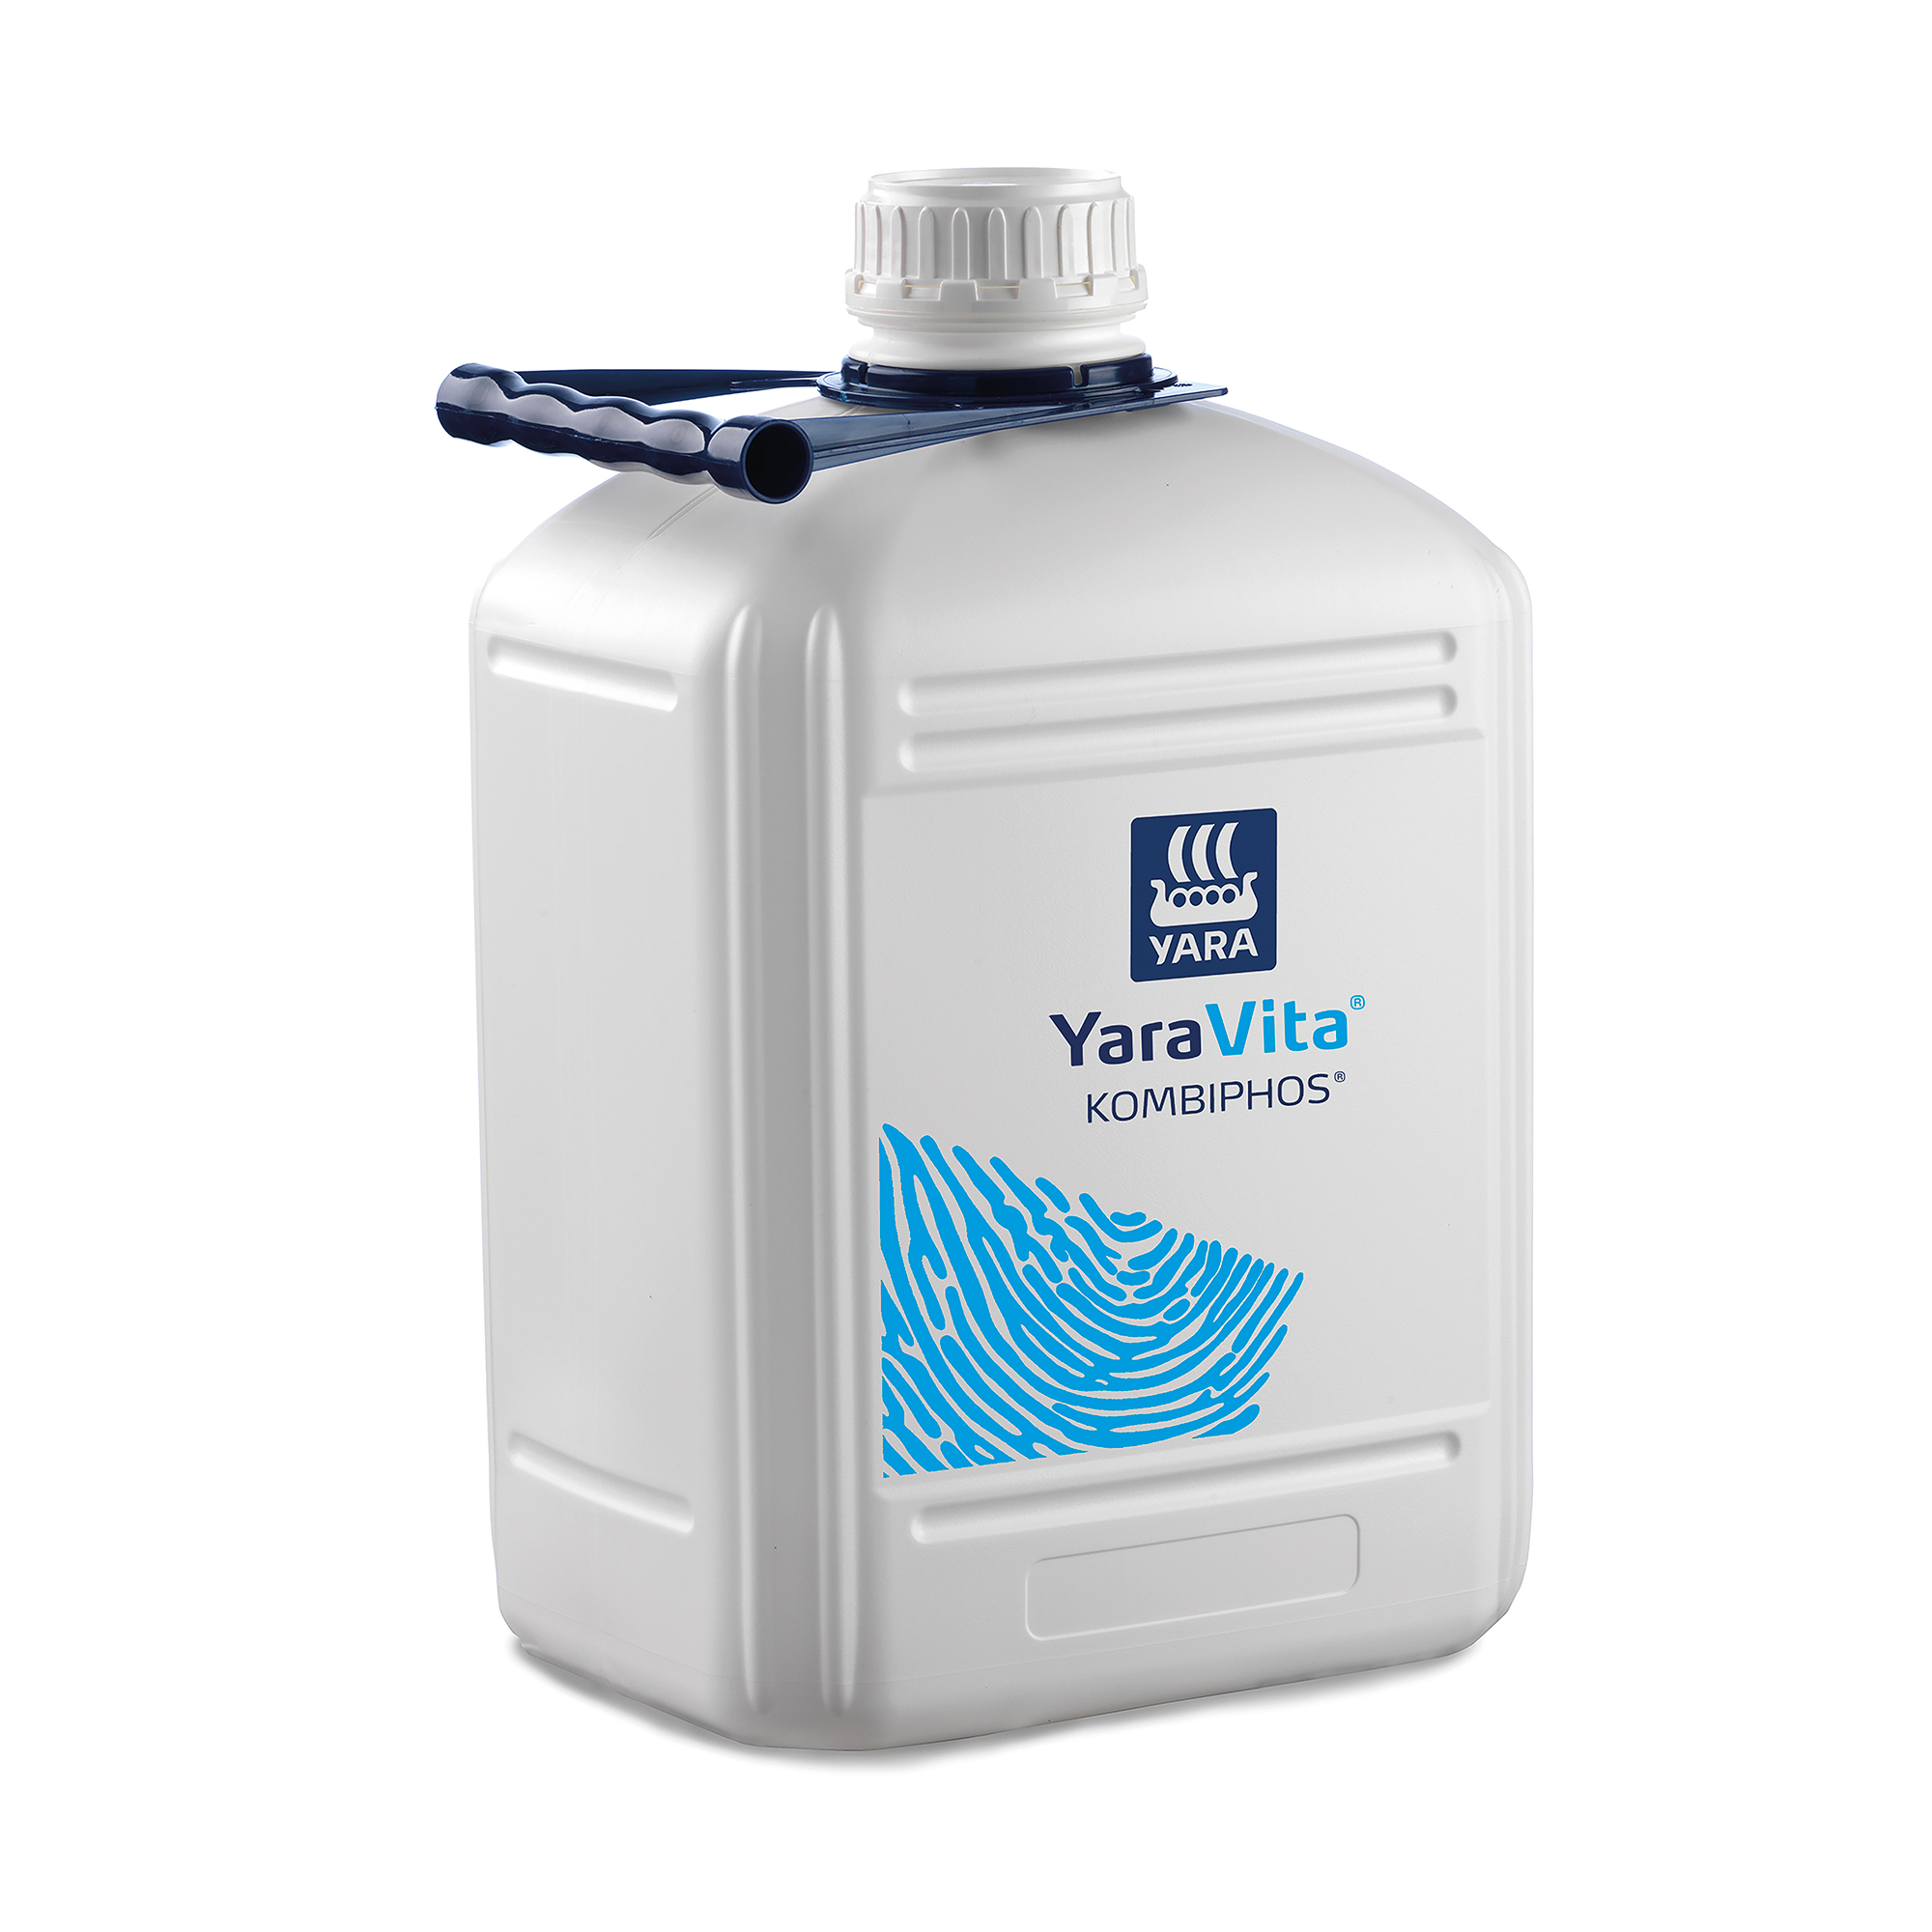 YaraVita® KombiPhos, 10 litre canister